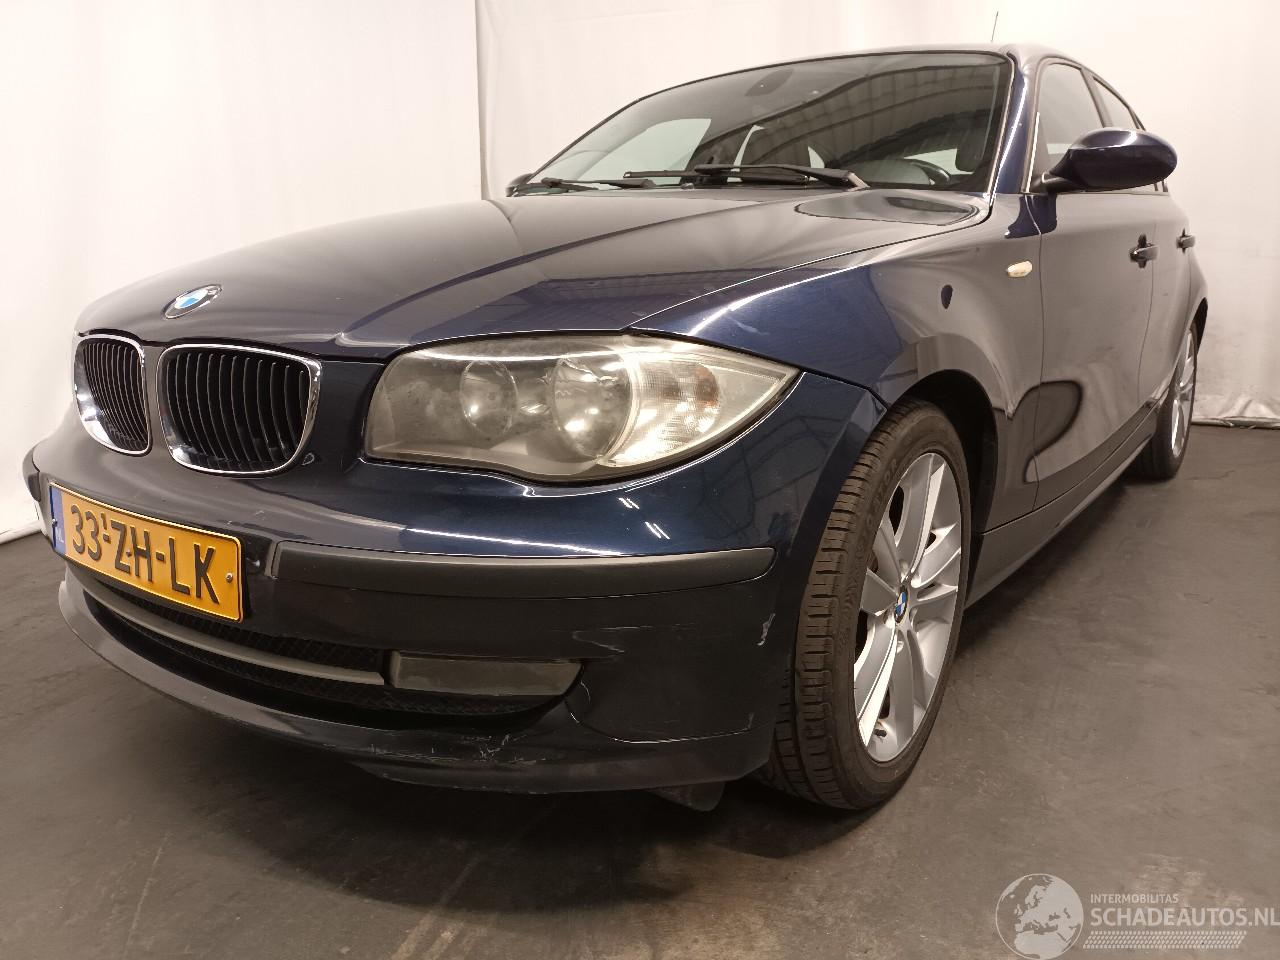 BMW 1-serie 1 serie (E87/87N) Hatchback 5-drs 116i 1.6 16V (N43-B16A) [90kW]  (09-=
2007/06-2011)